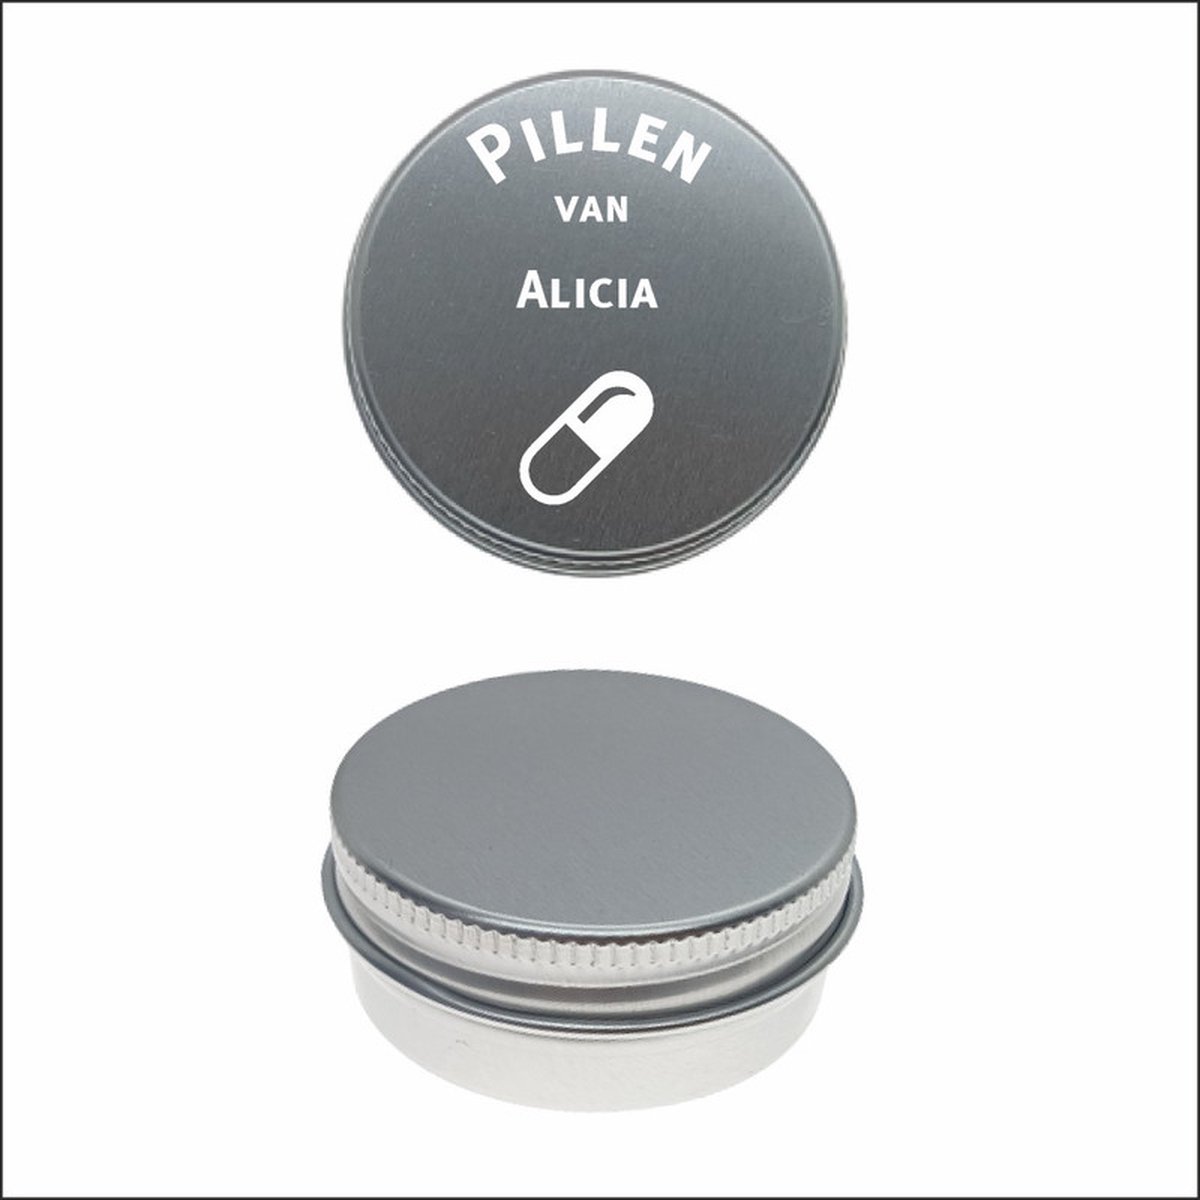 Pillen Blikje Met Naam Gravering - Alicia